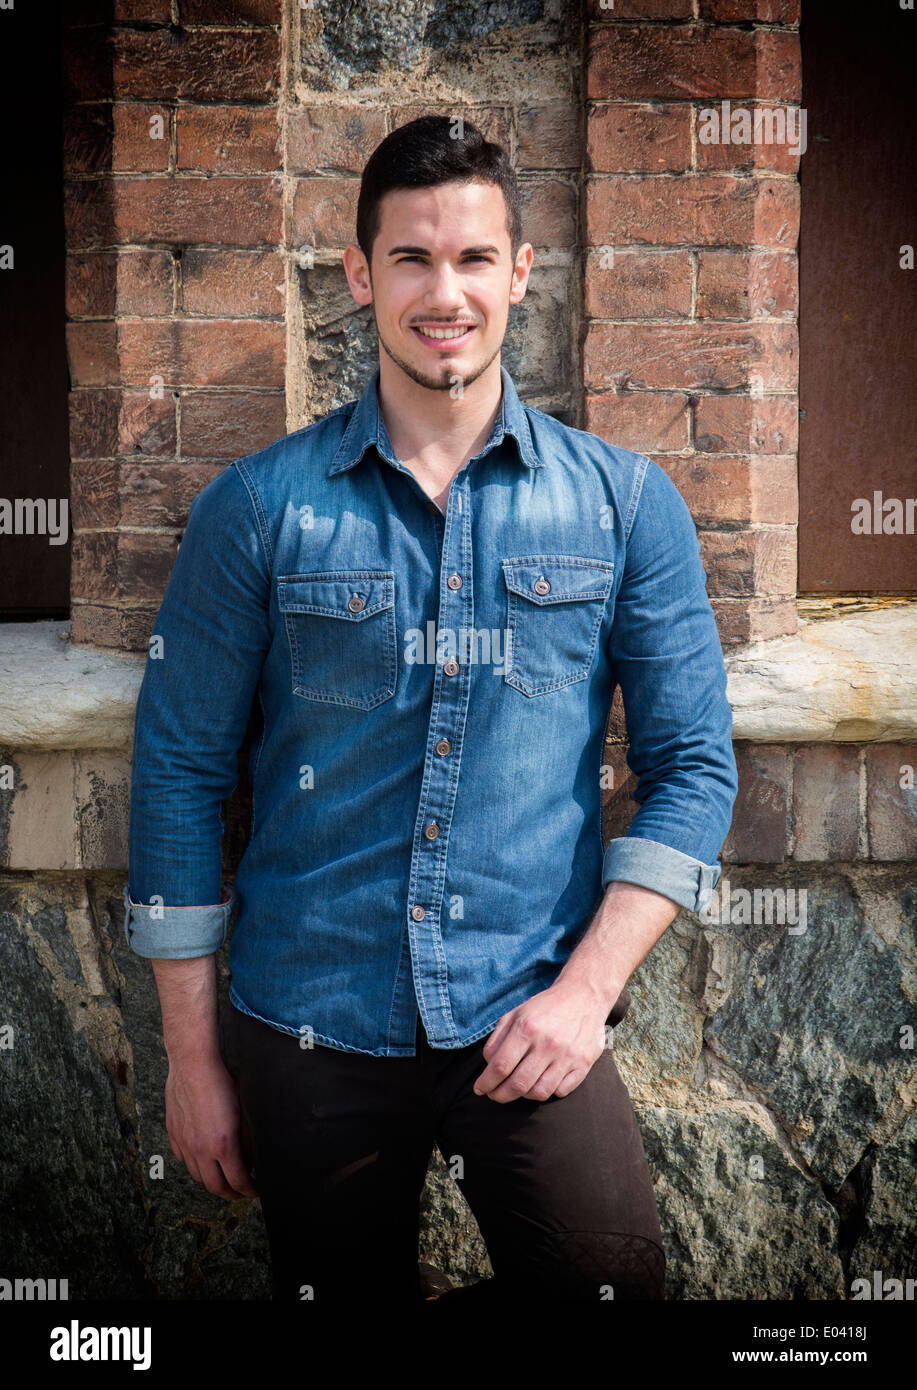 Beau jeune homme avec chemise en jean à l'extérieur debout en face de mur de briques, smiling Banque D'Images